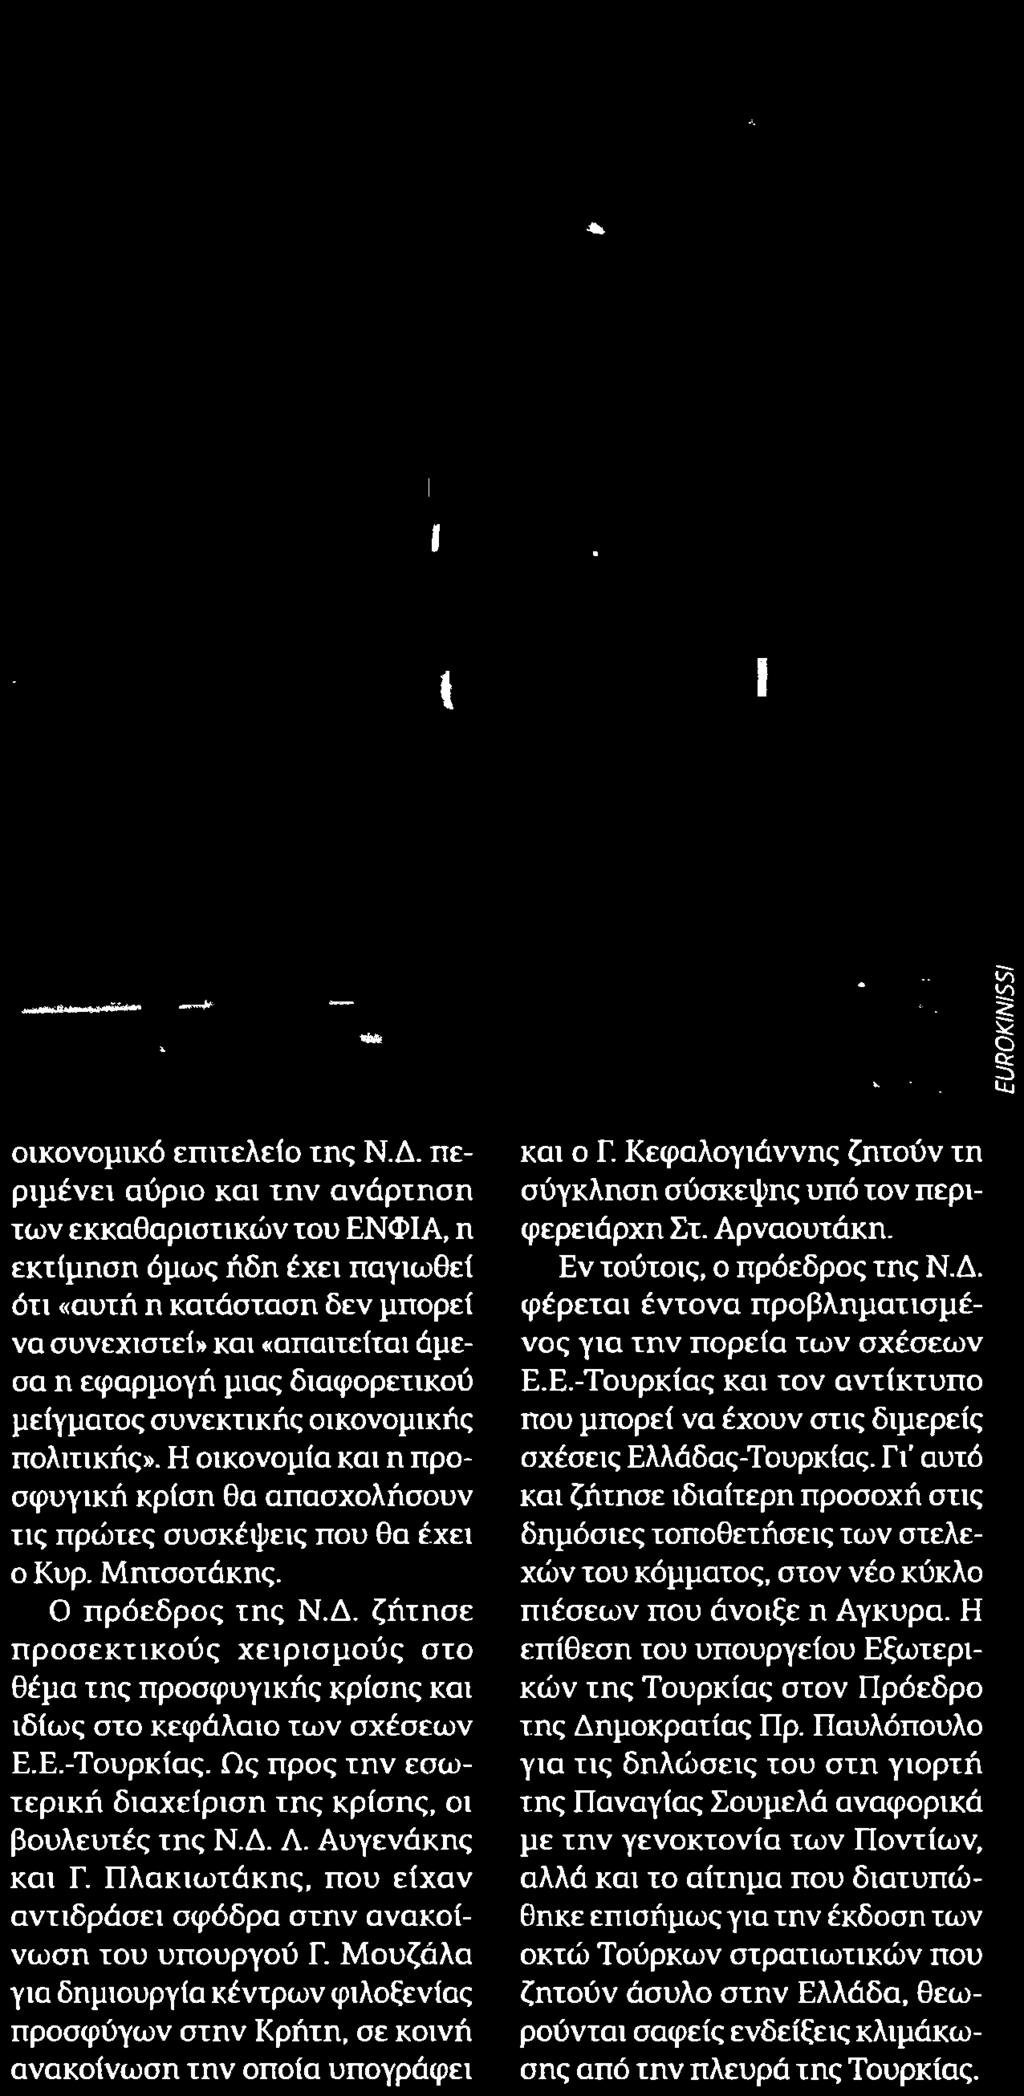 Δ Λ Αυγενάκης και Γ Πλακιωτάκης που είχαν αντιδράσει σφόδρα στην ανακοίνωση του υπουργού Γ Μουζάλα για δημιουργία κέντρων φιλοξενίας προσφύγων στην Κρήτη σε κοινή ανακοίνωση την οποία υπογράφει και ο